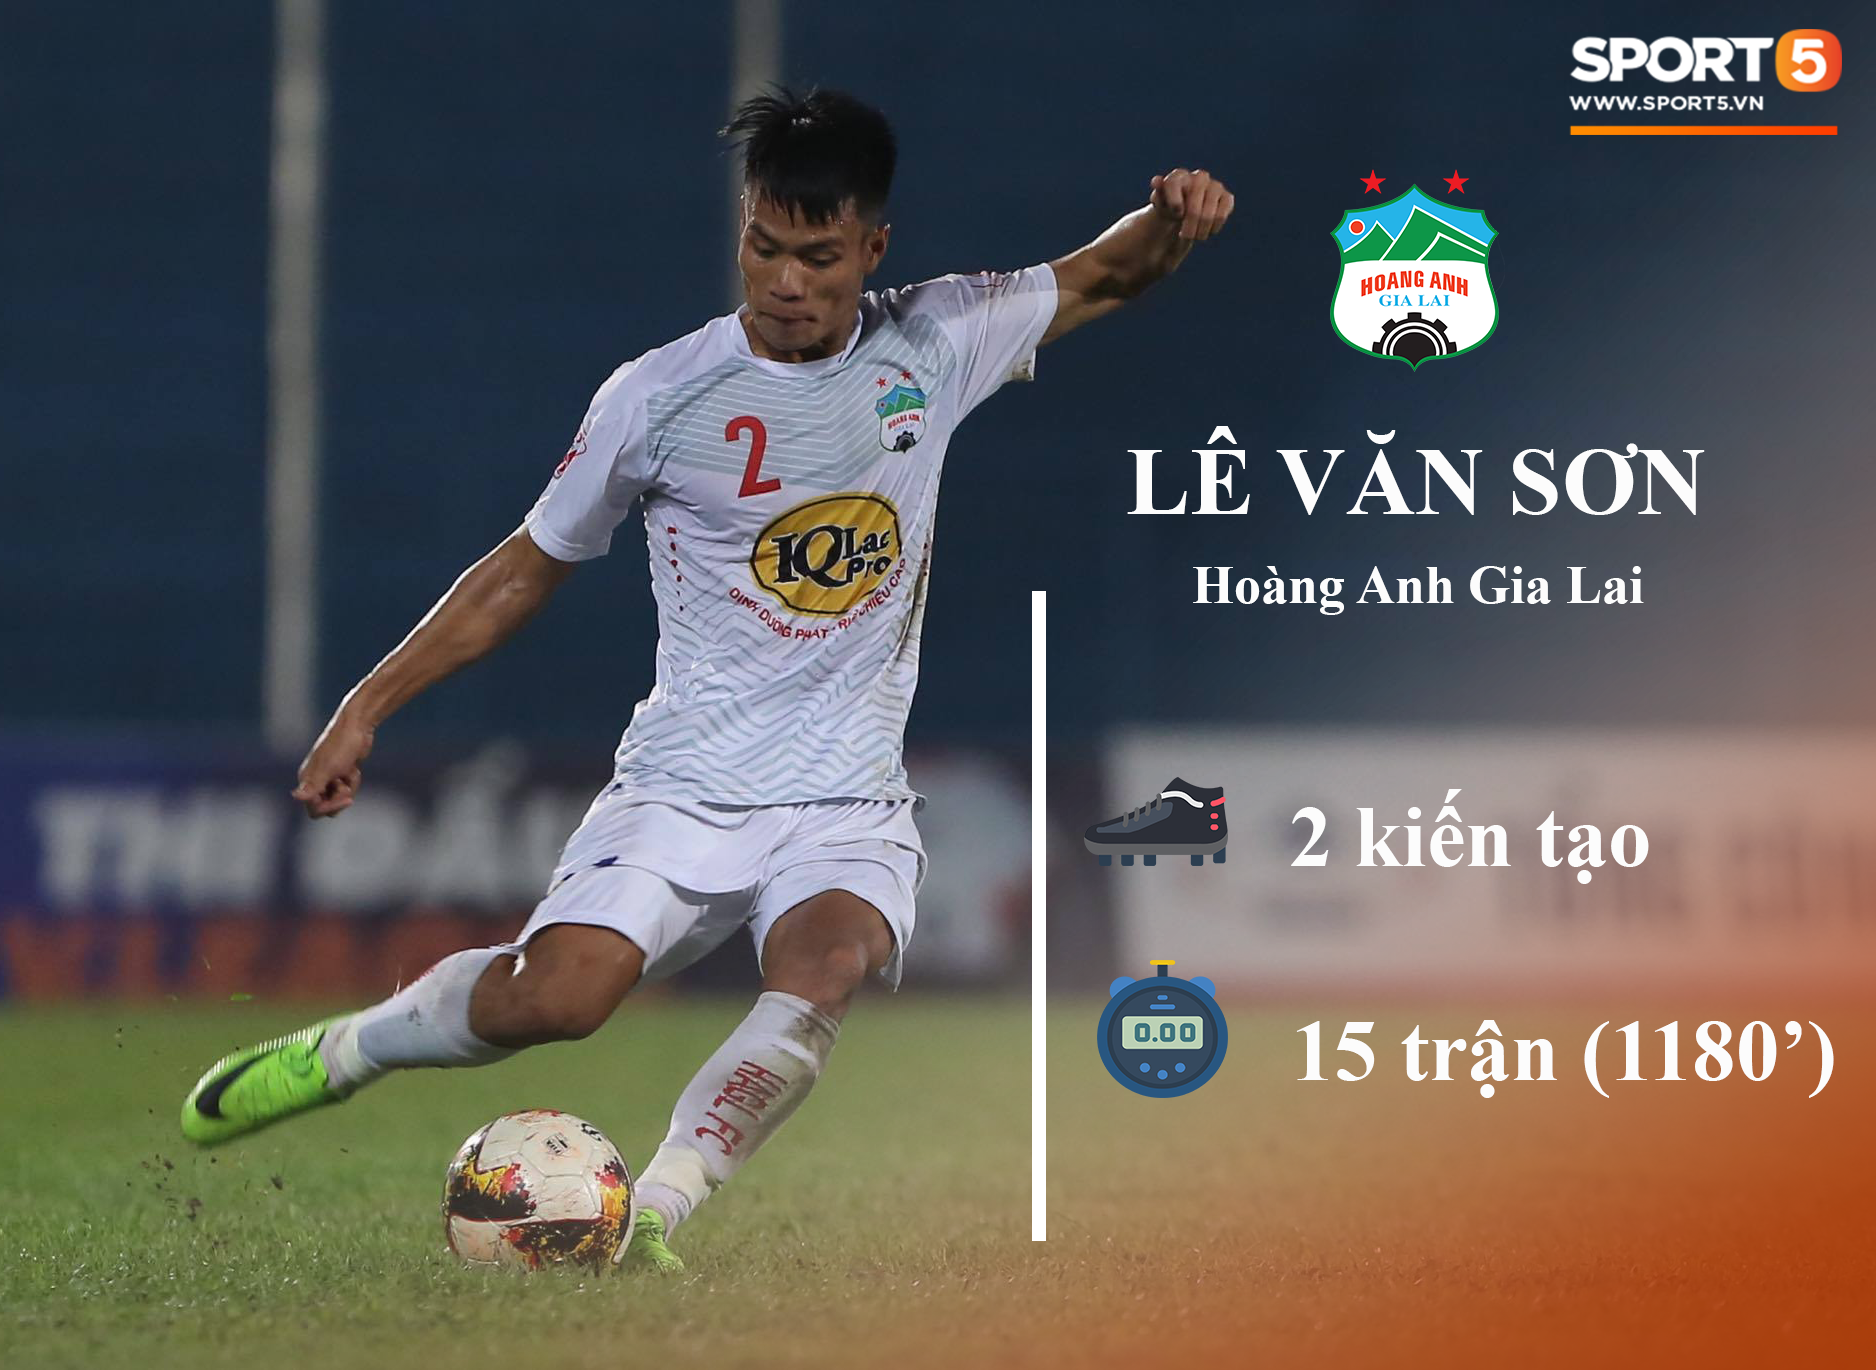 Những thống kê đáng chú ý của cầu thủ U23 Việt Nam (P1) - Ảnh 6.